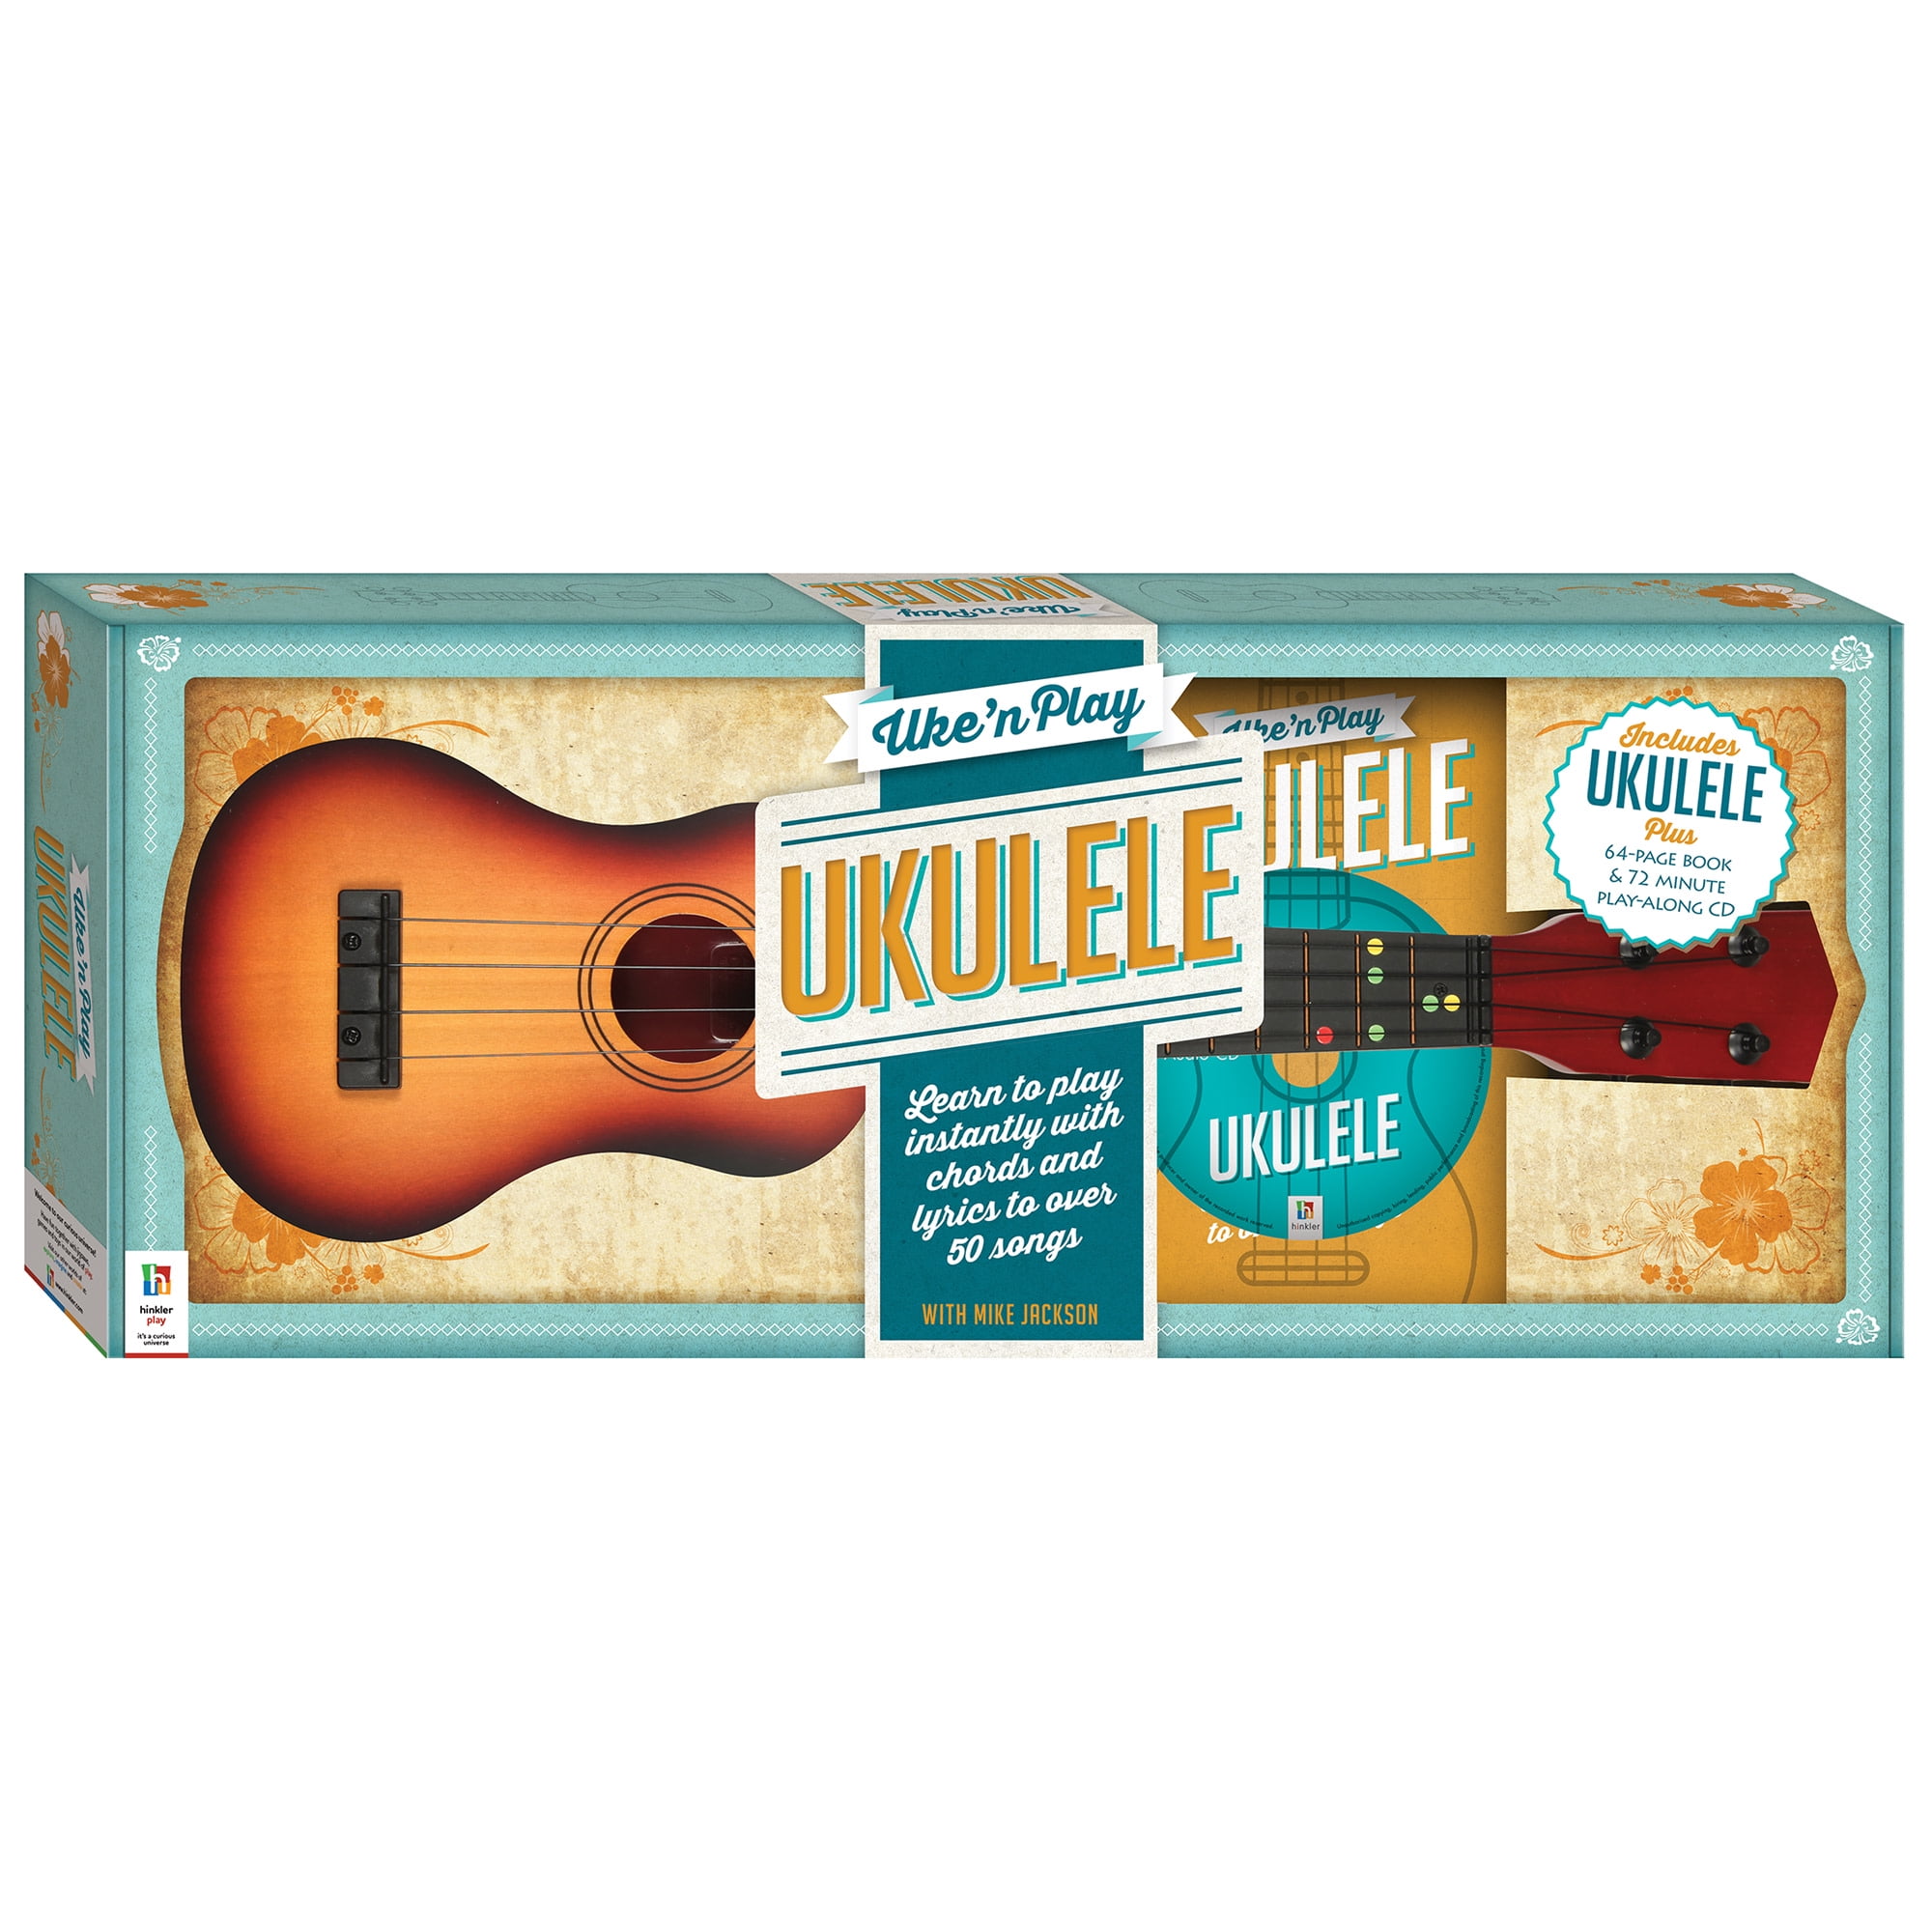 Uke can do it - ukulele for adult beginners